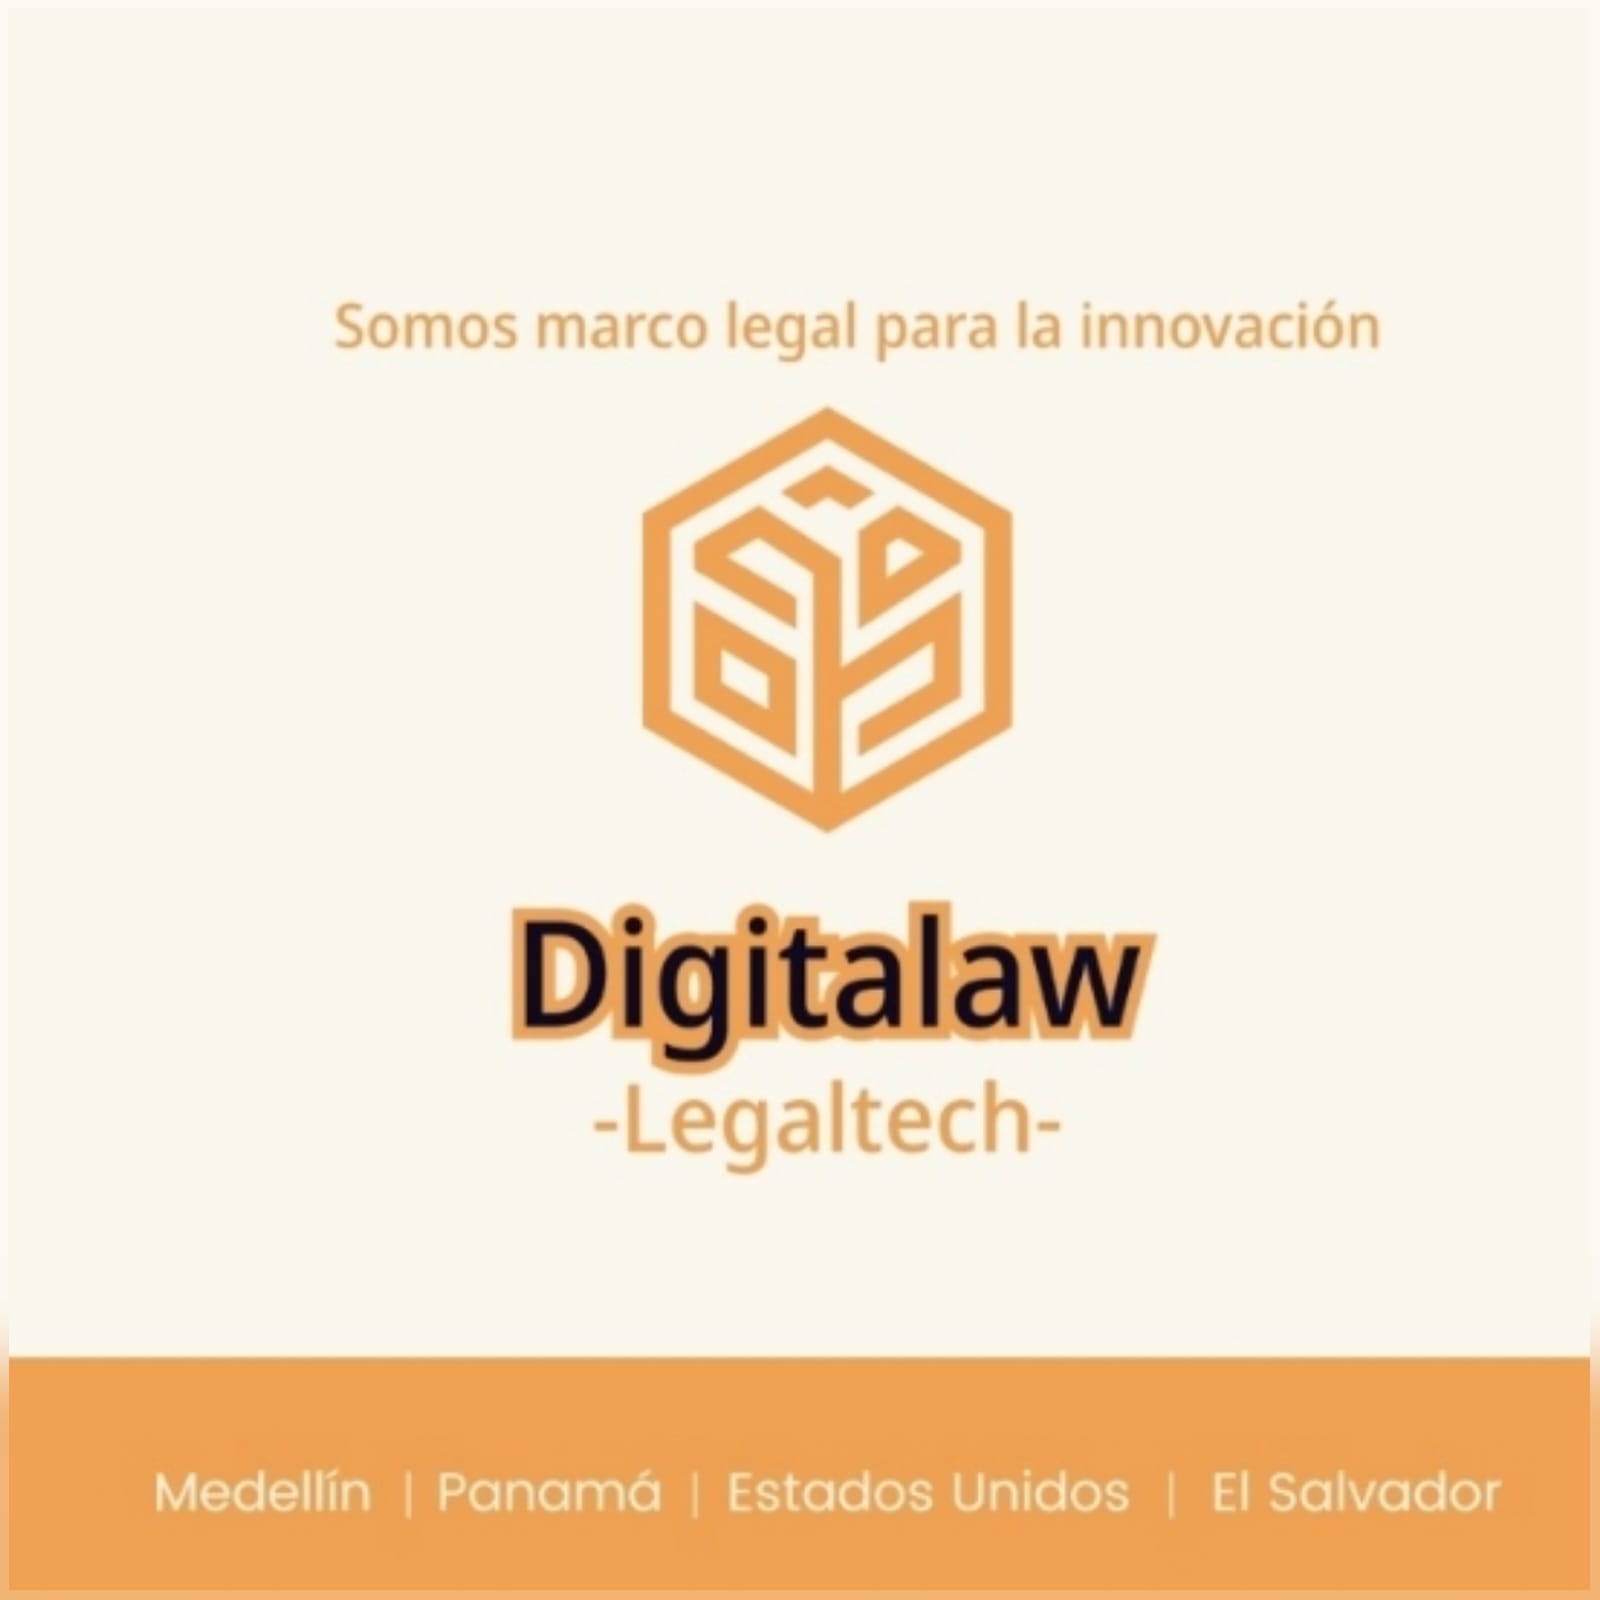 Digitalaw_Legaltech